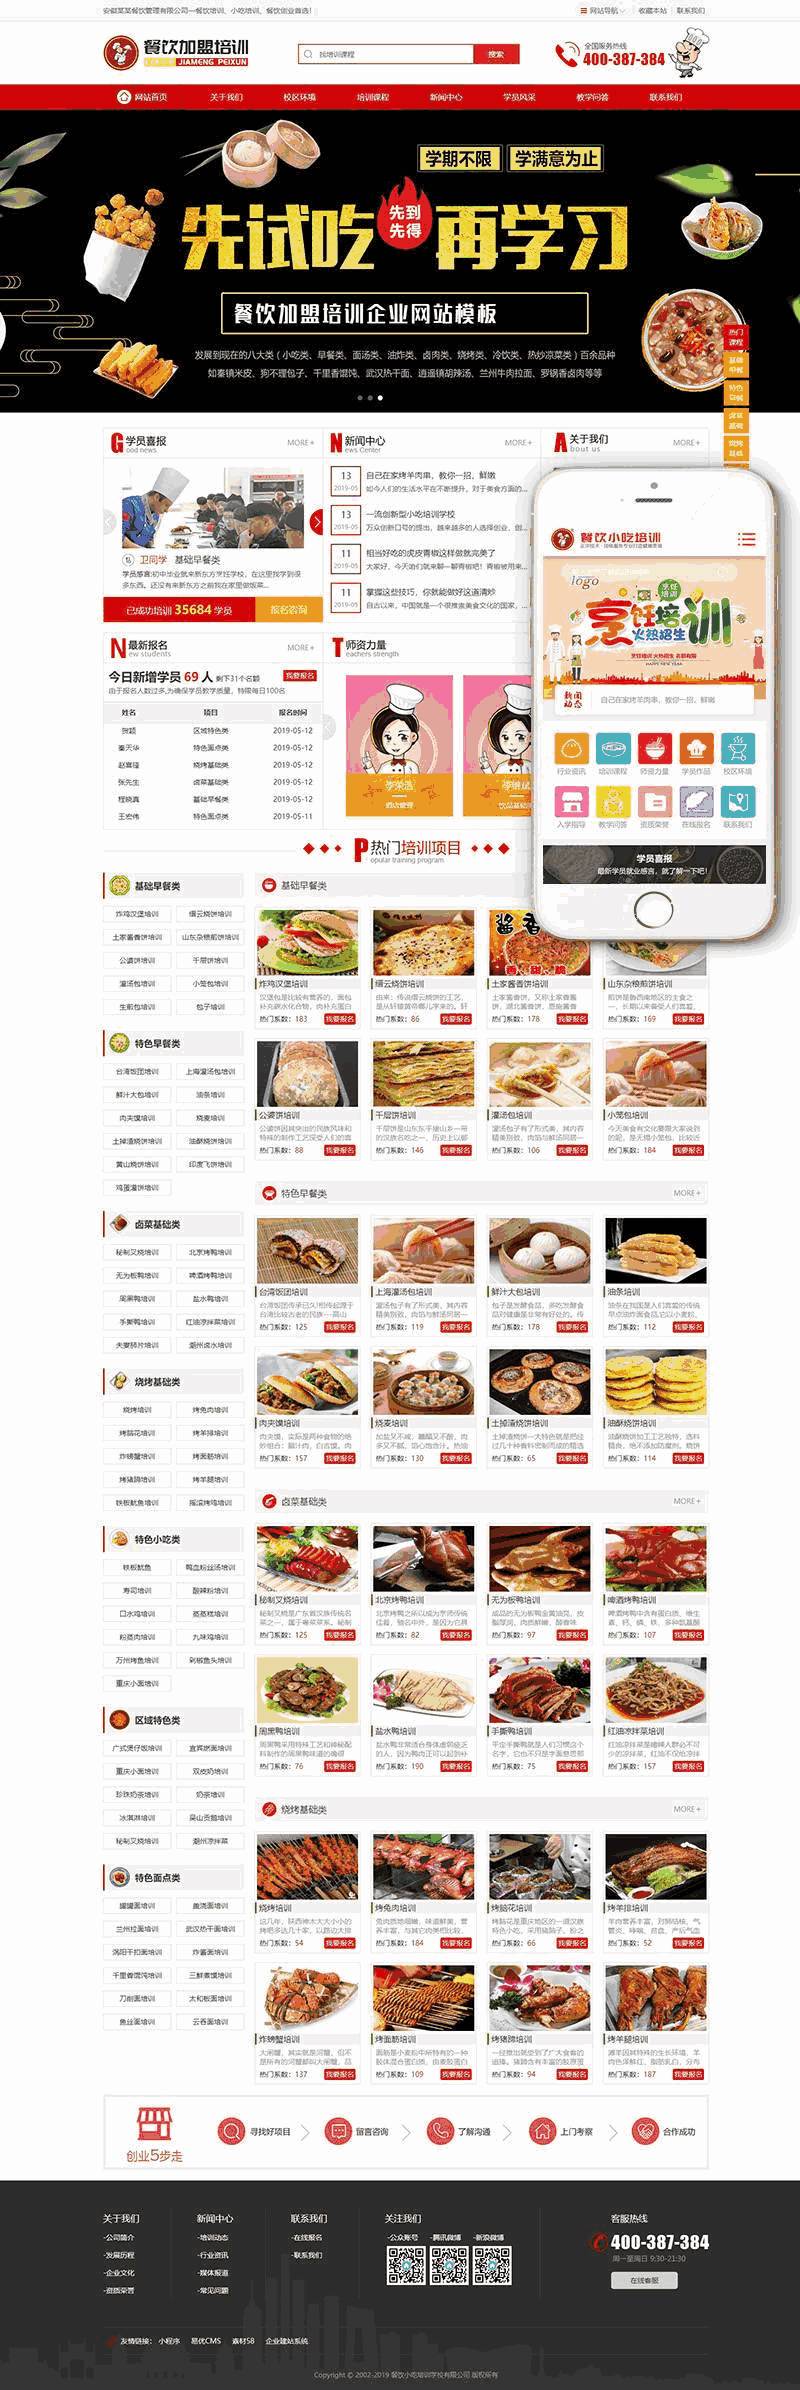 烹饪餐饮小吃培训学校WordPress模板主题演示图